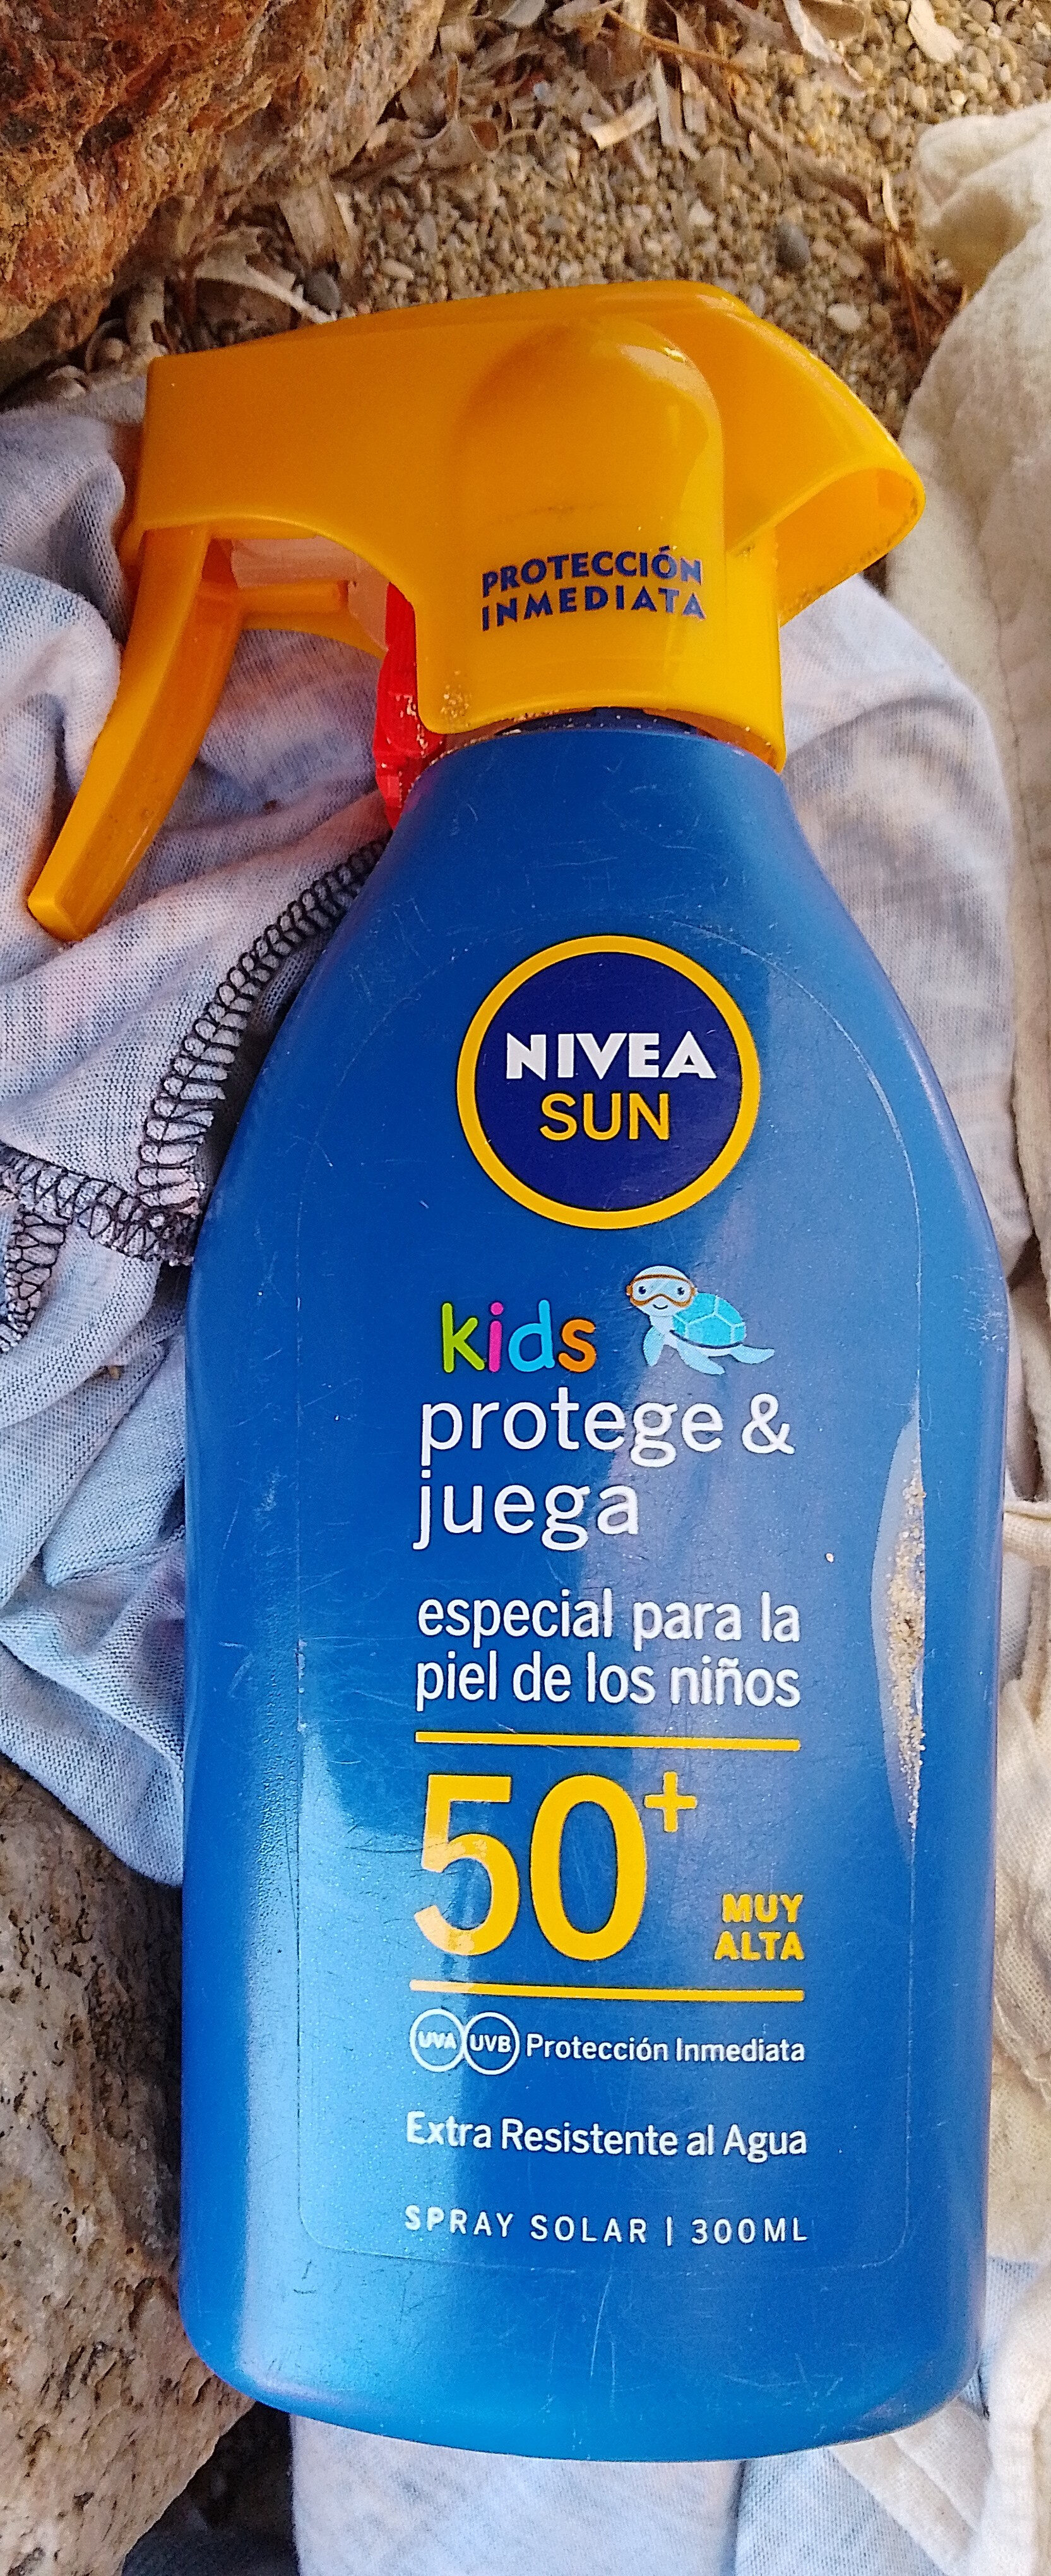 Nivea Sun kids 50+ - מוצר - es